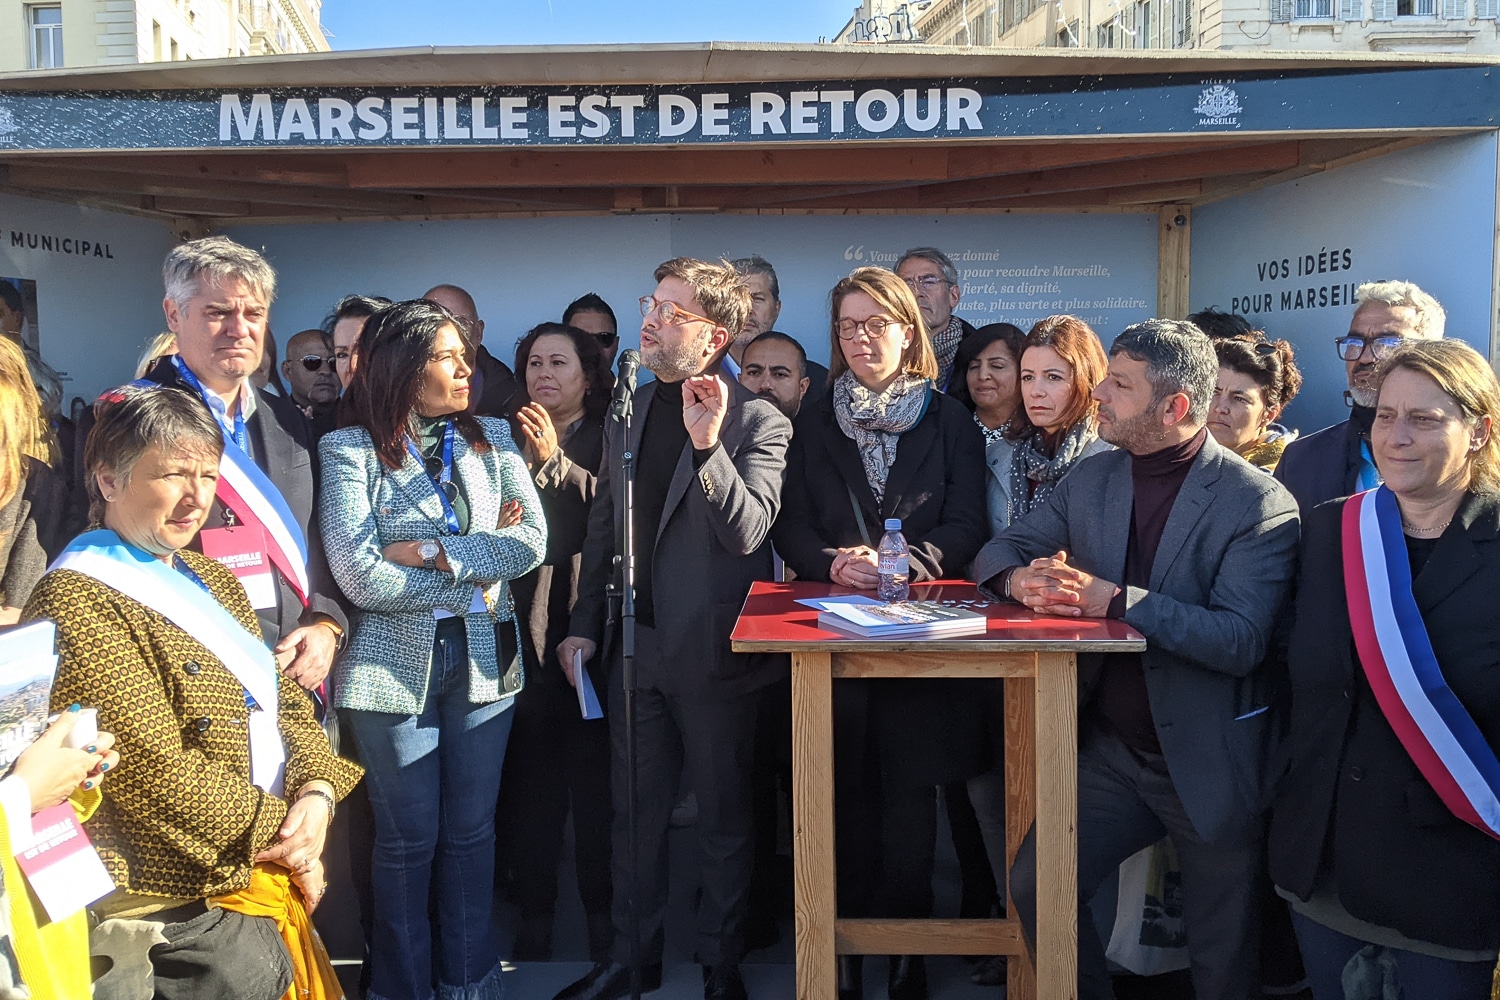 bilan, Benoît Payan et le Printemps marseillais présentent leur bilan de mi-mandat, Made in Marseille